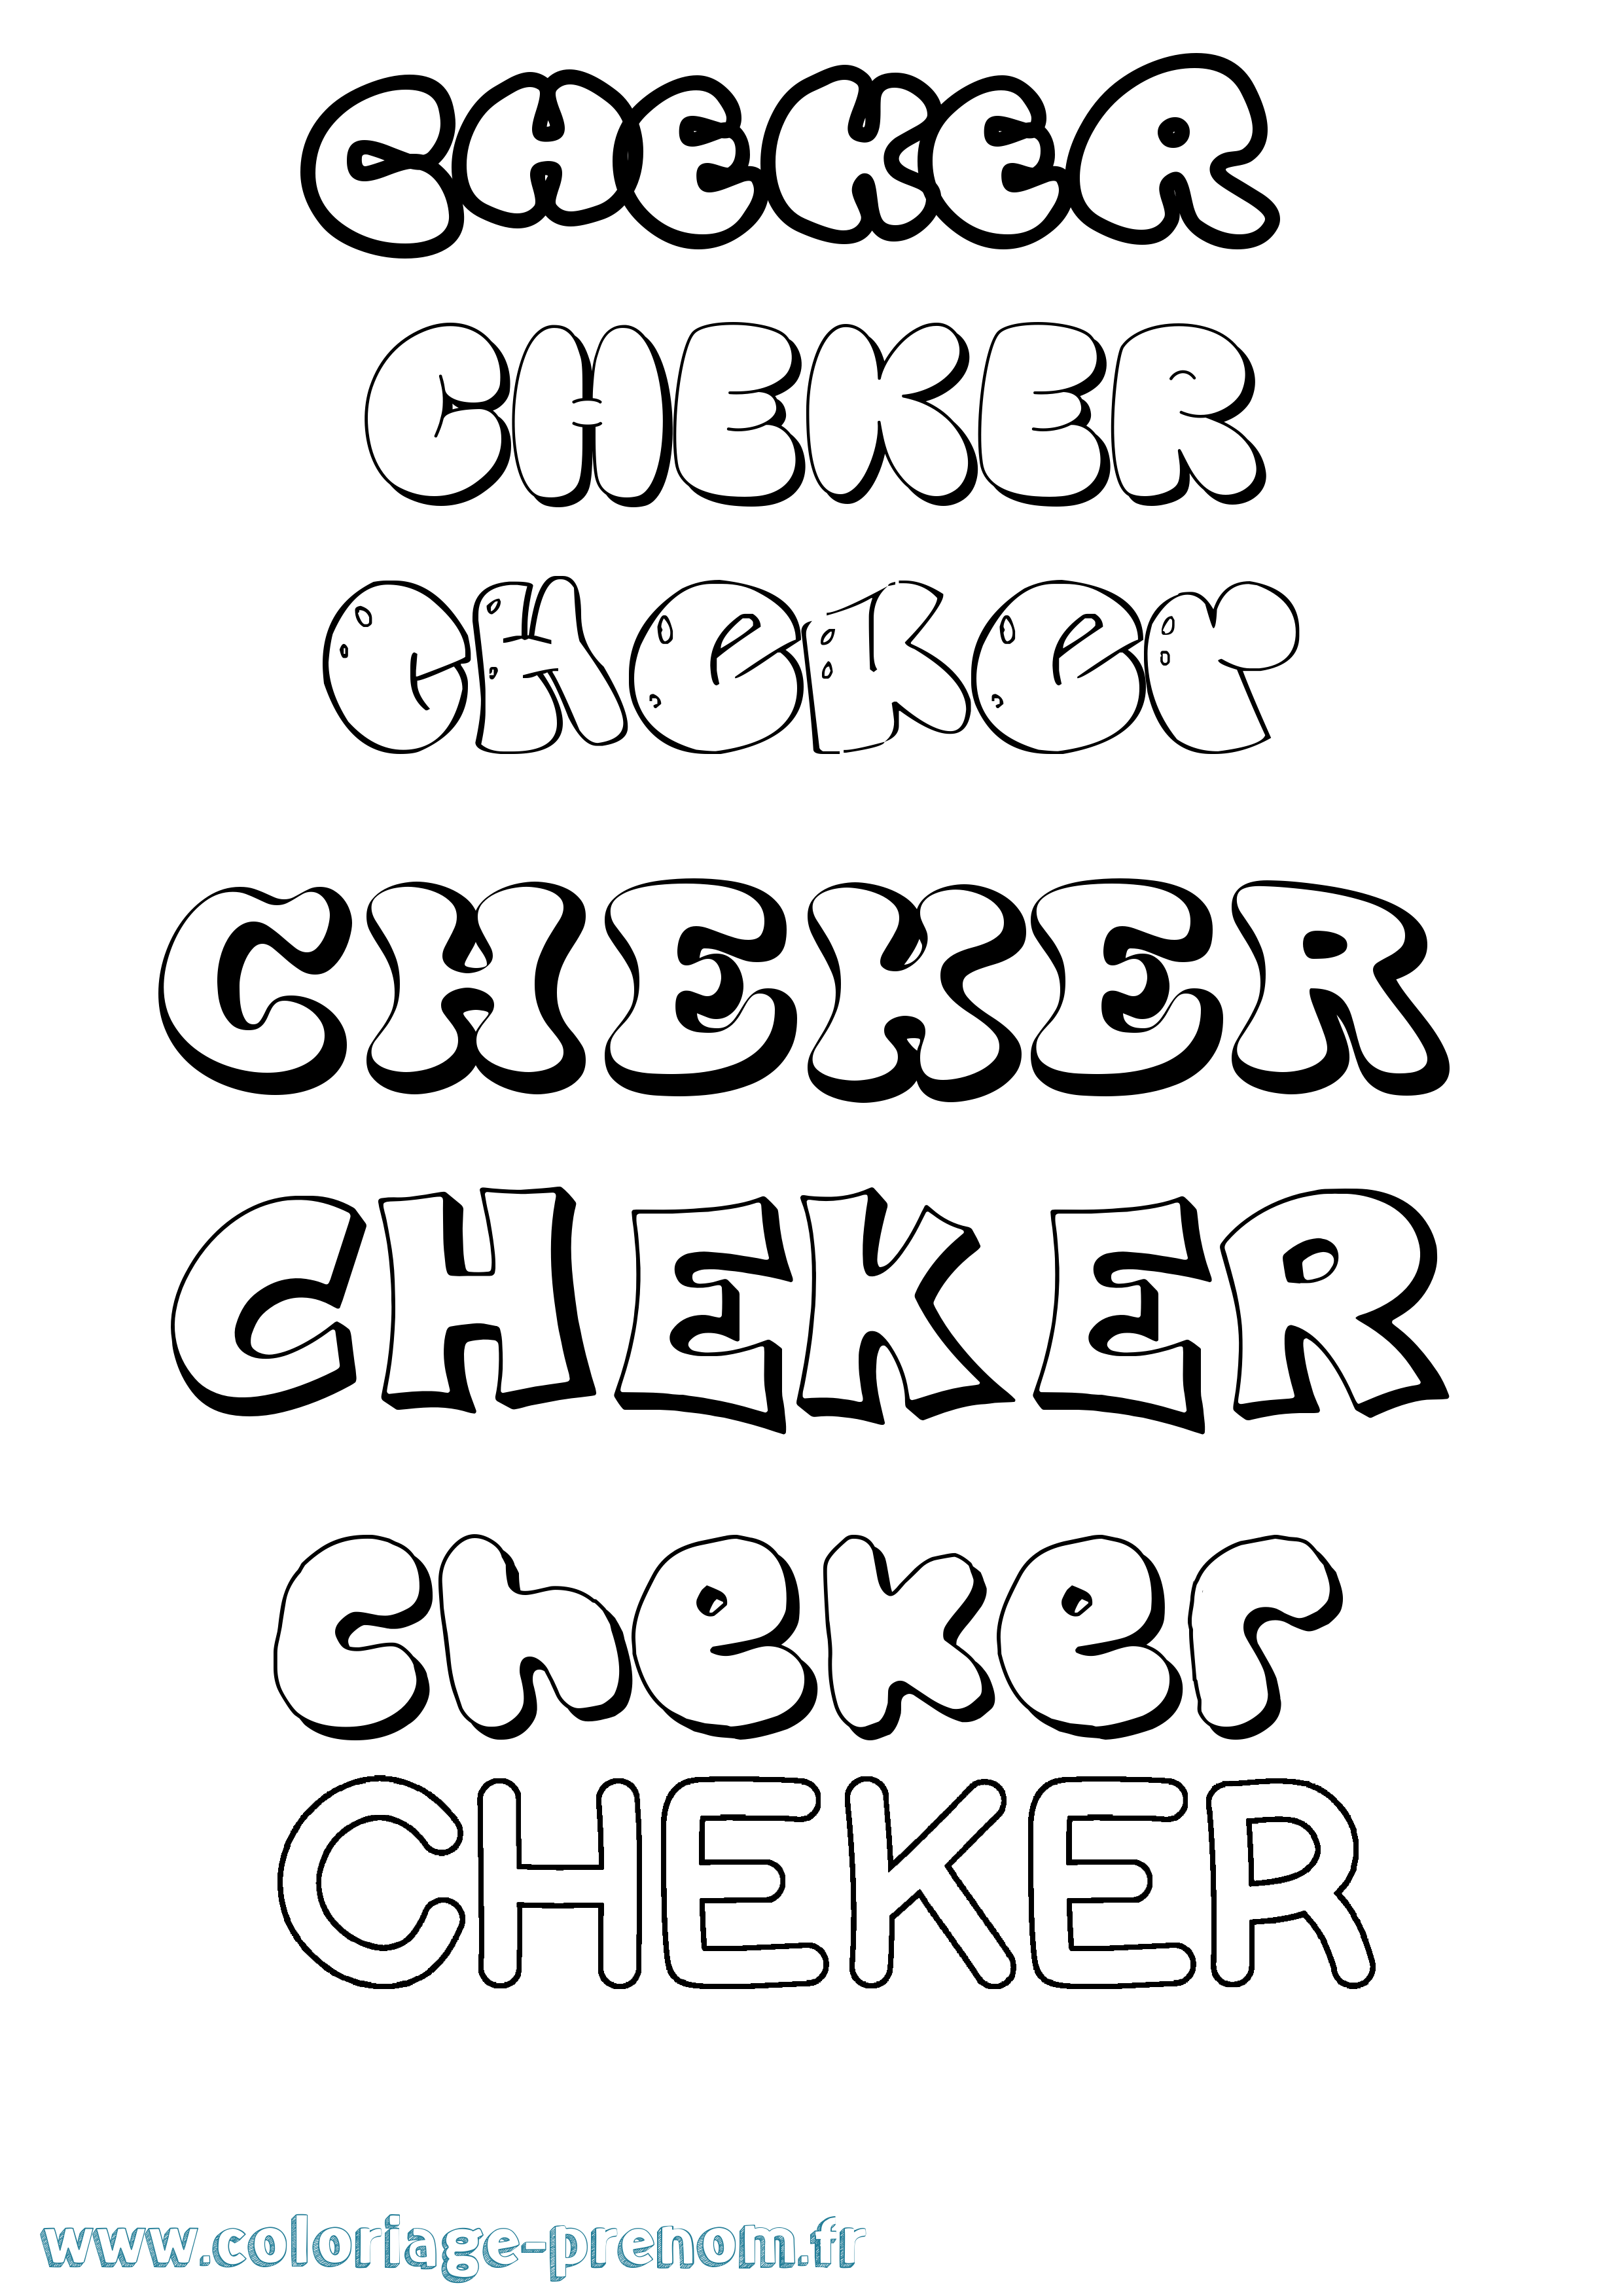 Coloriage prénom Cheker Bubble